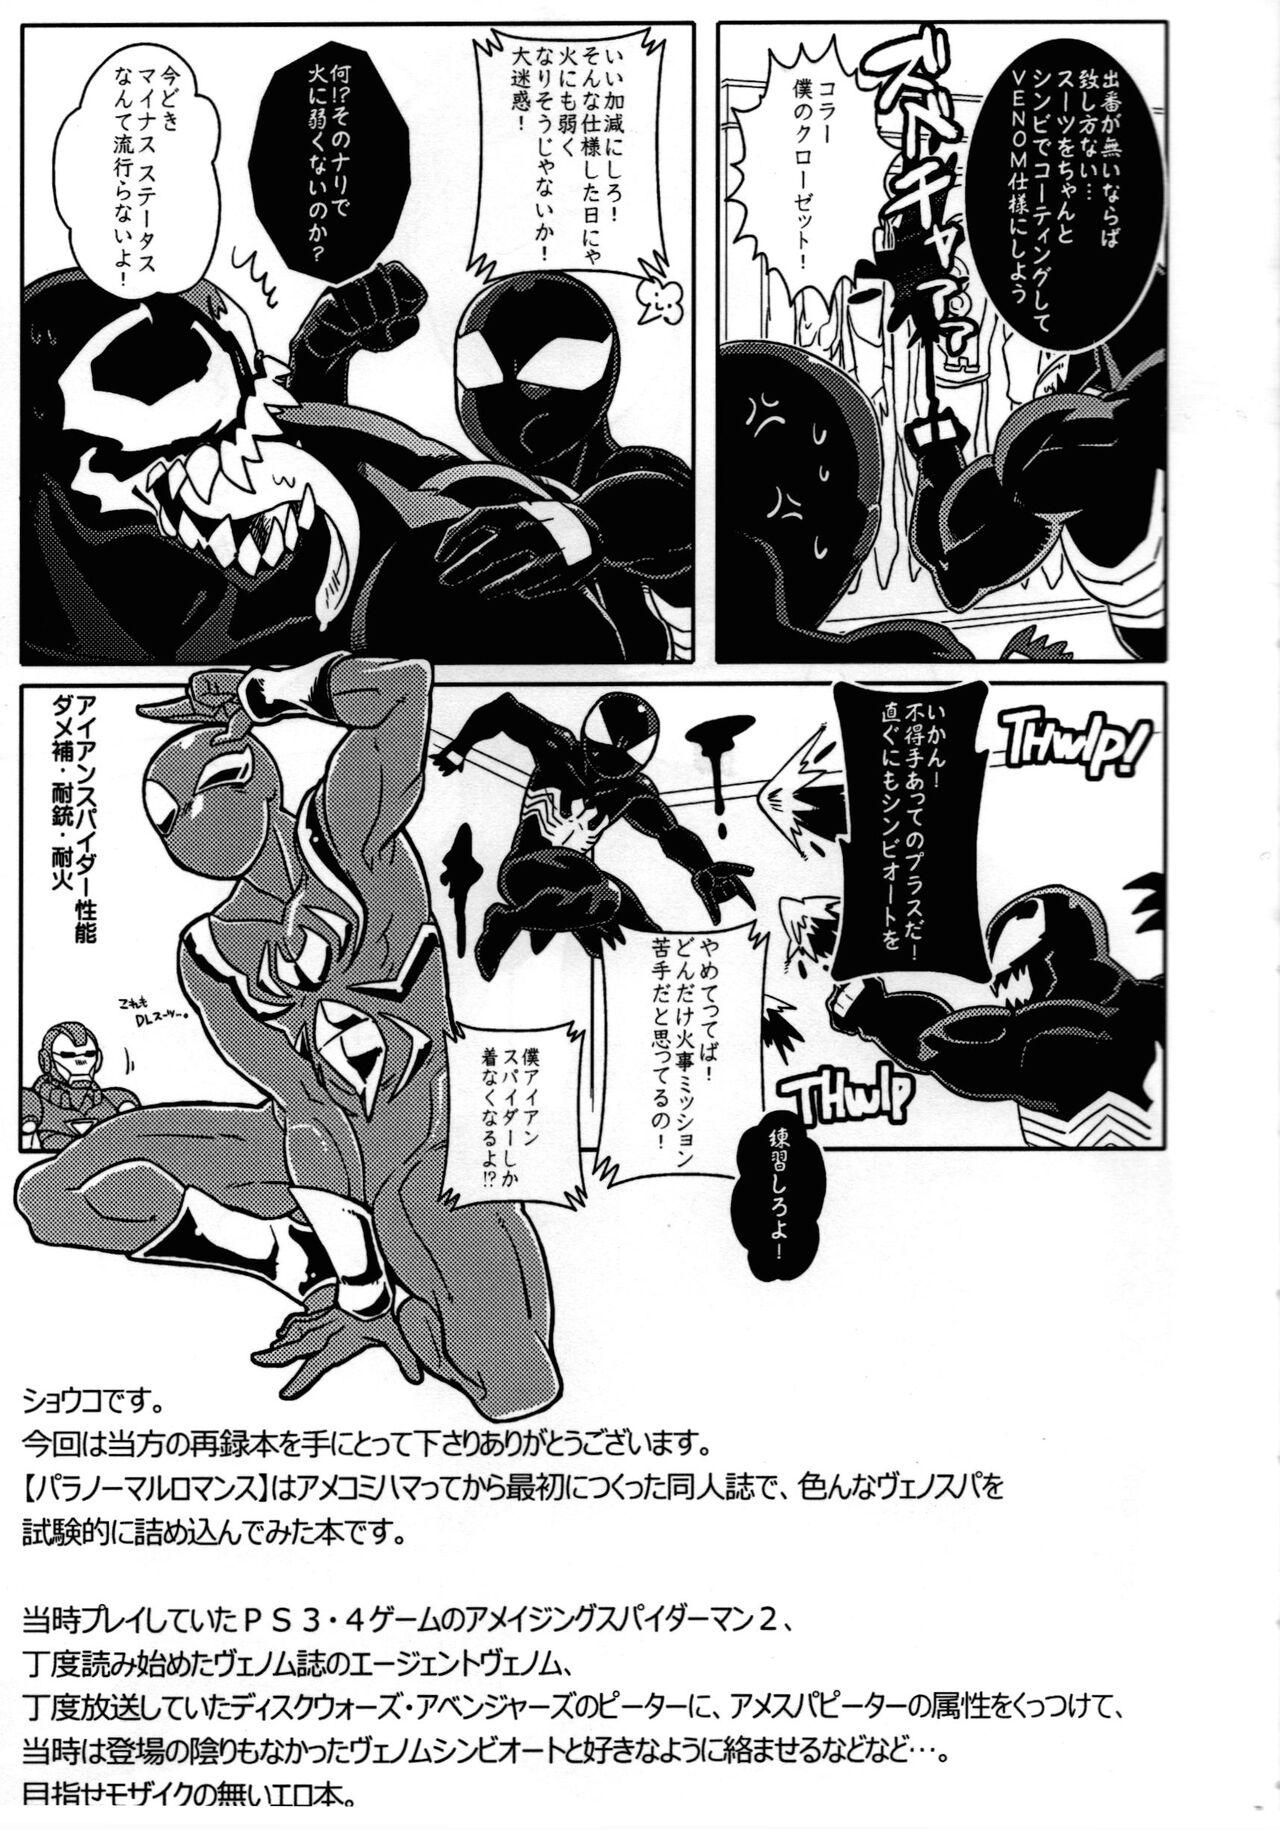 Titties Spider‐Man REMIX - Spider man Tit - Page 7